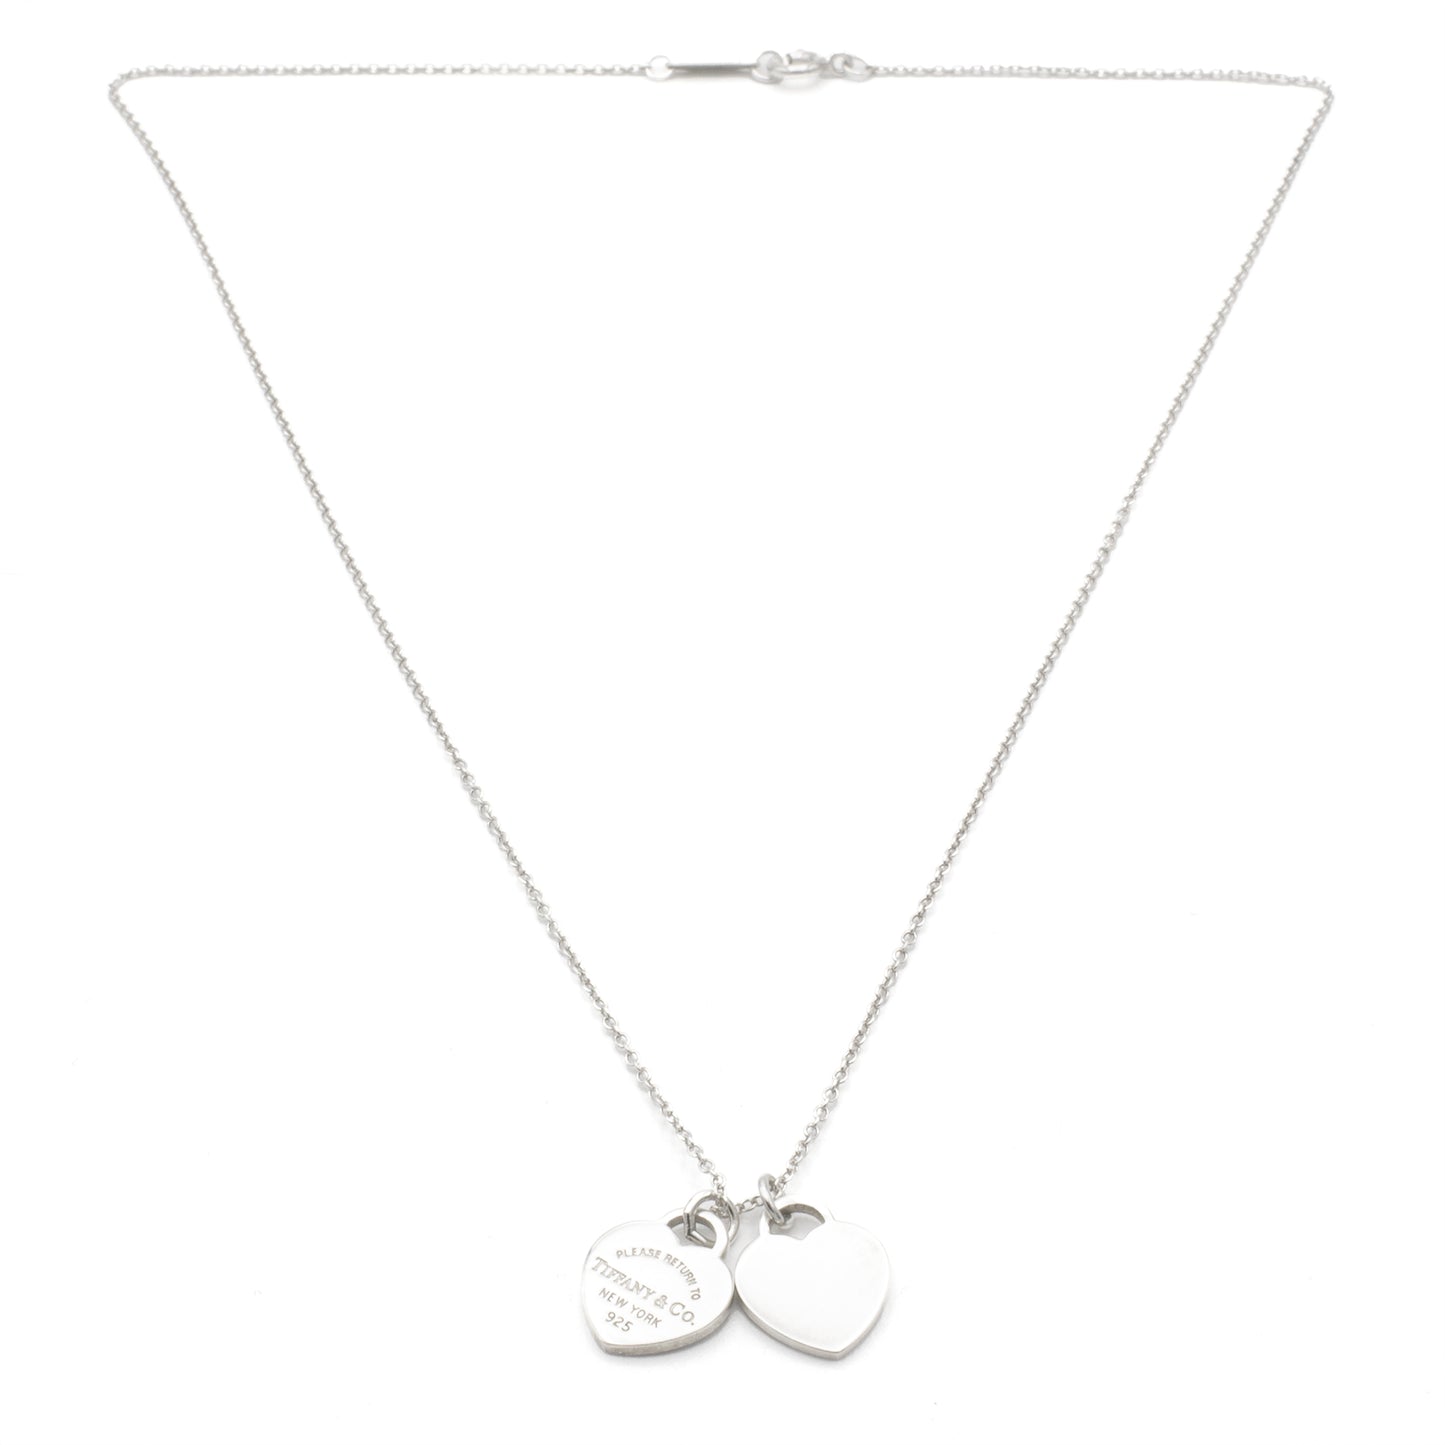 Tiffany & Co Return to Tiffany necklace